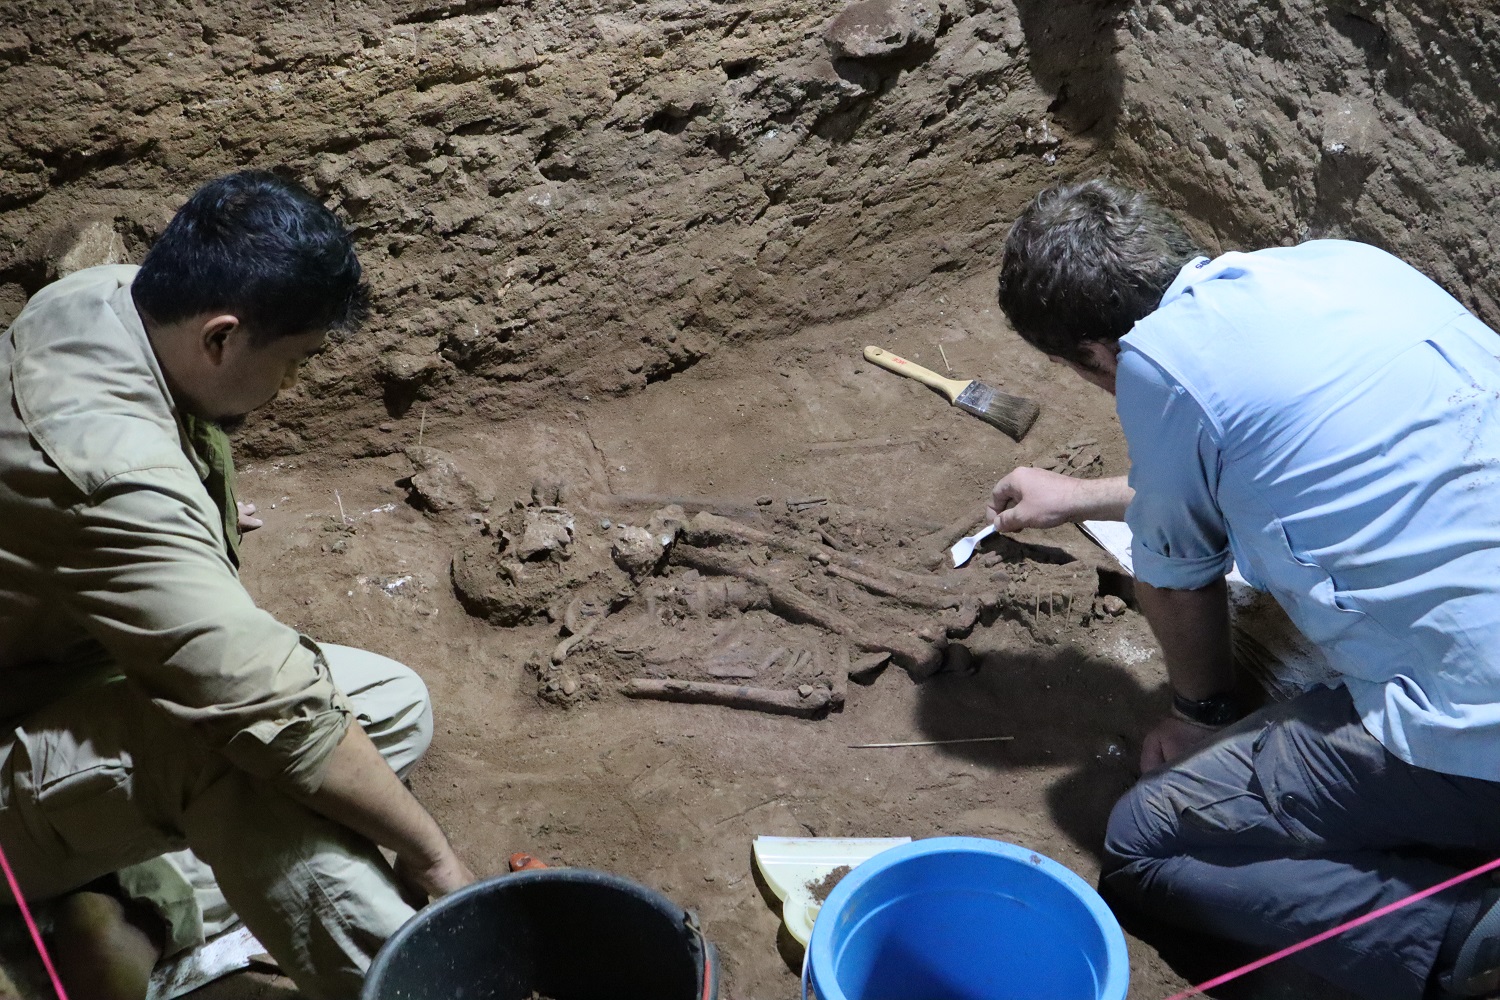 Régészeti szenzáció a 31 ezer évvel ezelőtt végzett életmentő amputáció